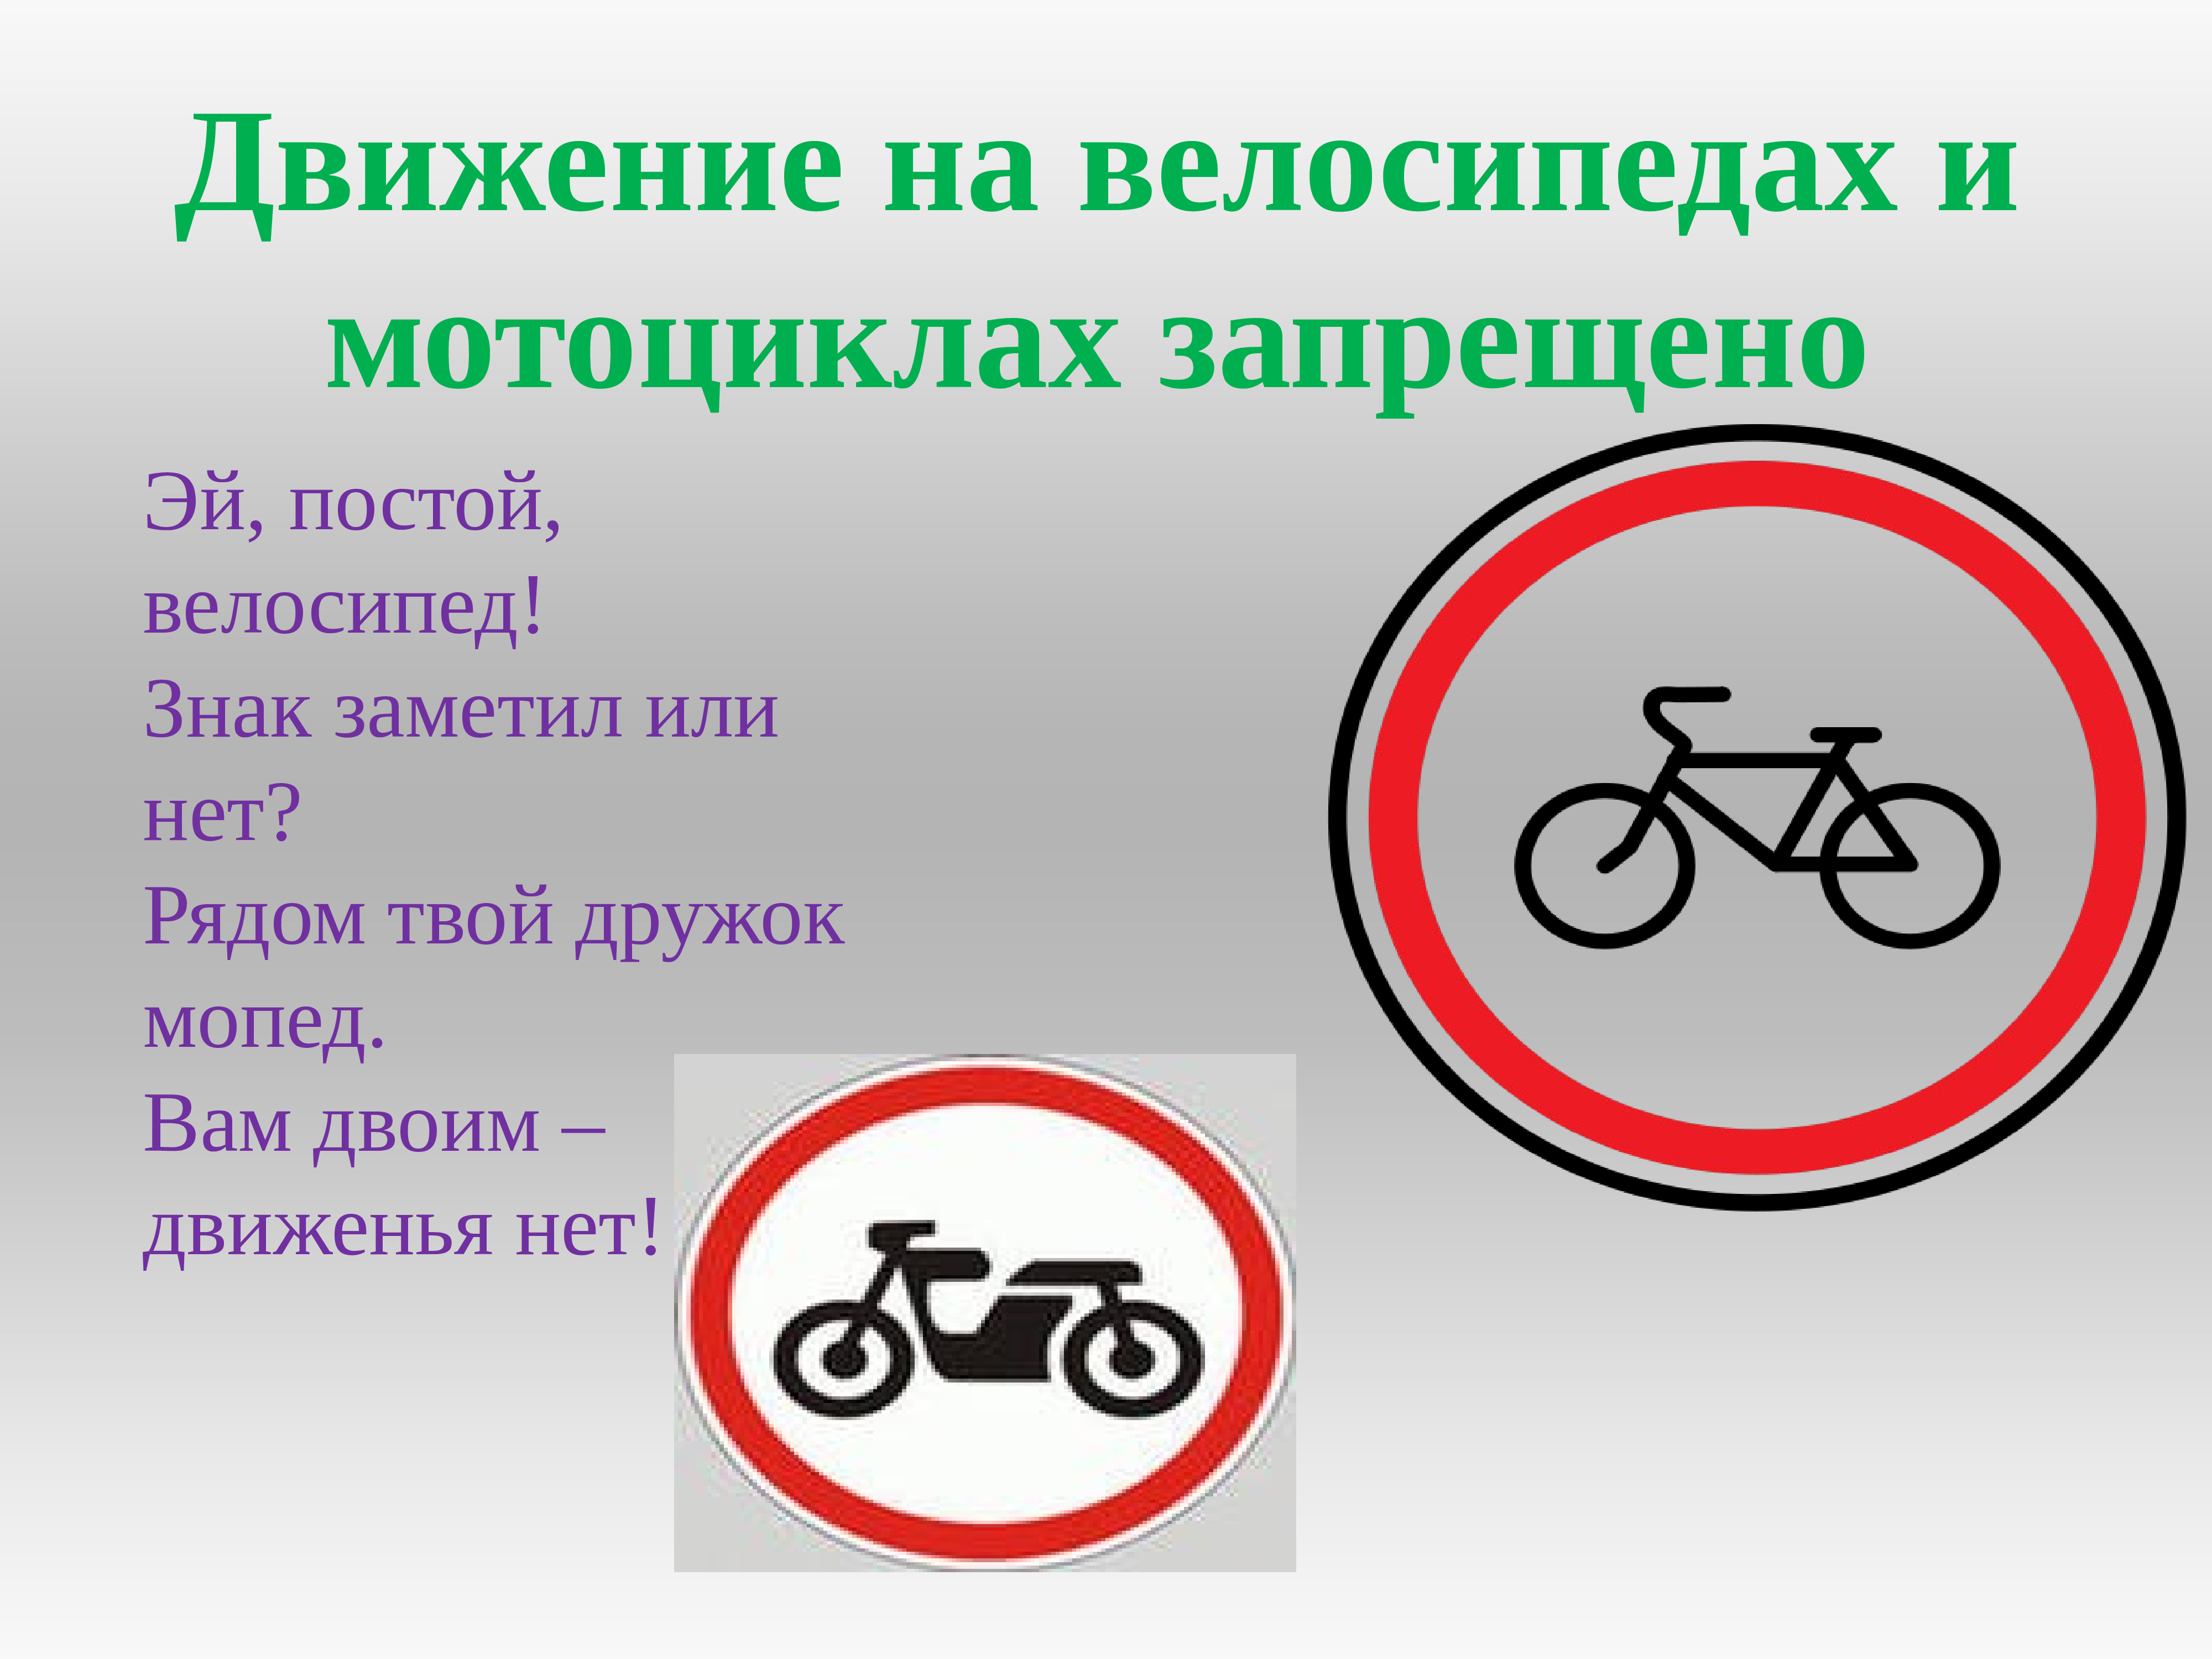 Знак мотоцикл в круге. Знак запрет на движение велосипедов и мопедов. Движение на велосипедах запрещено. Движение на велосипедах и мопедах. Движение на велосипедах и мопедах запрещено.